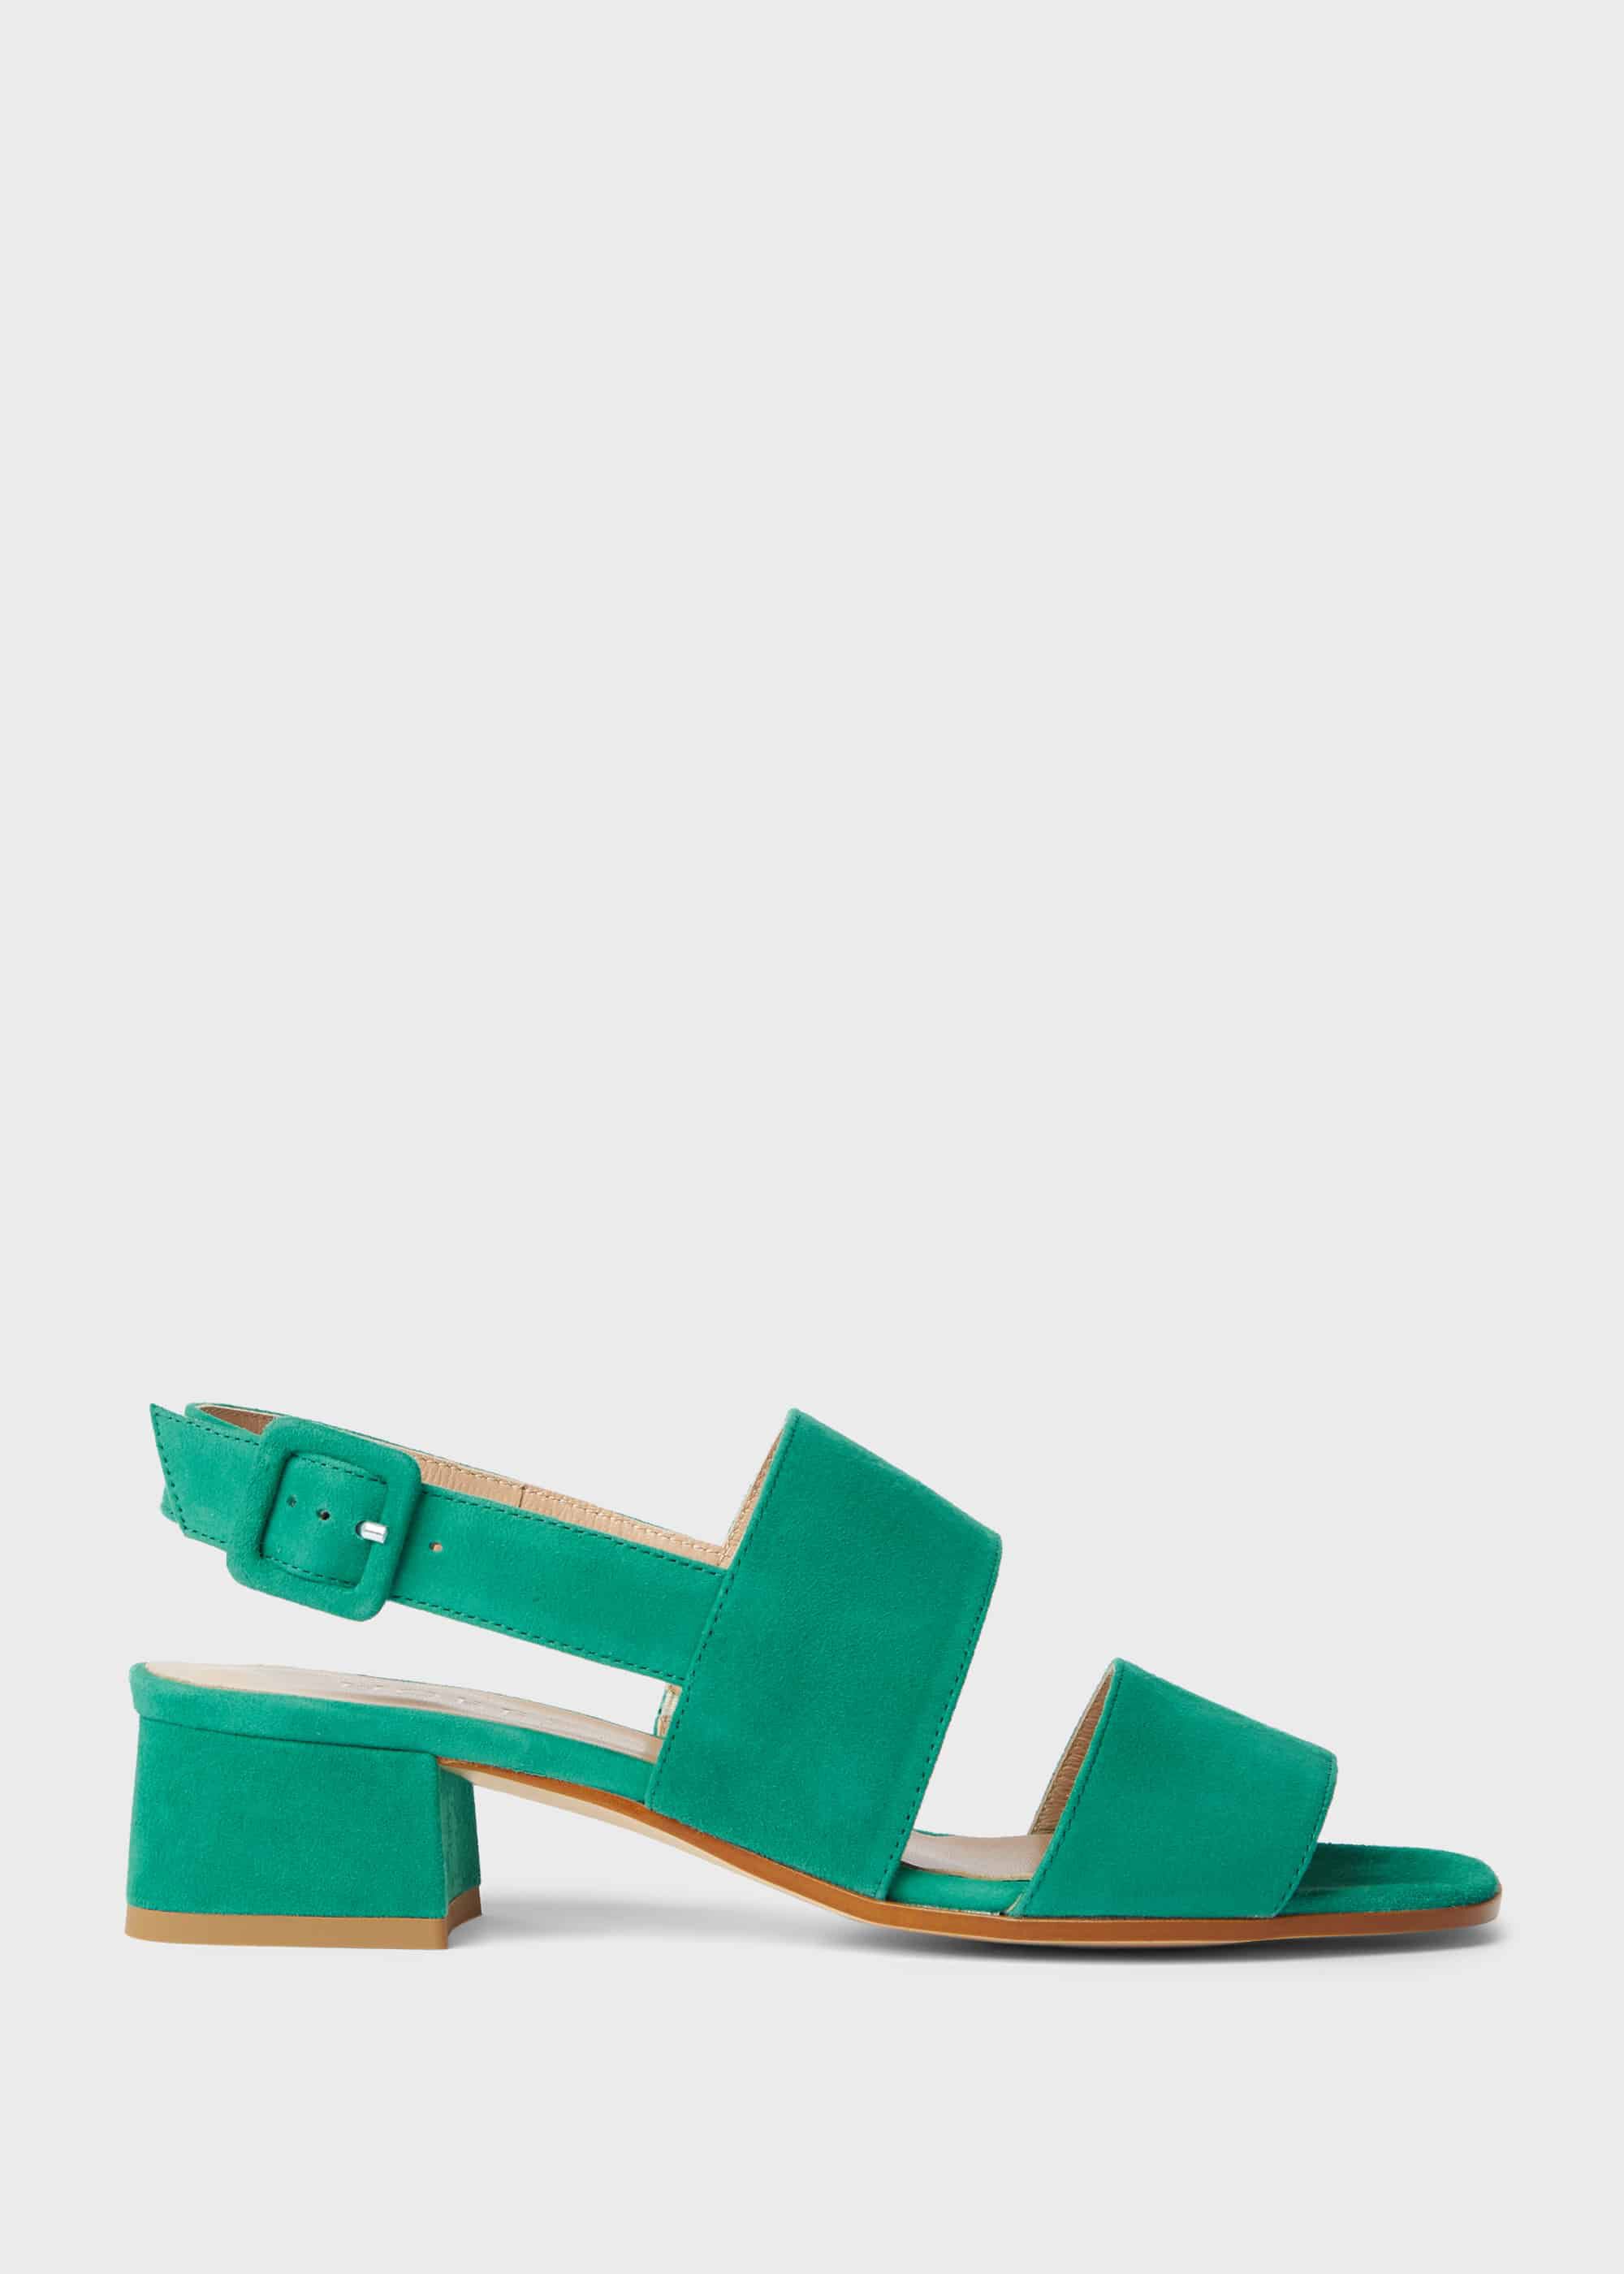 aqua block heels